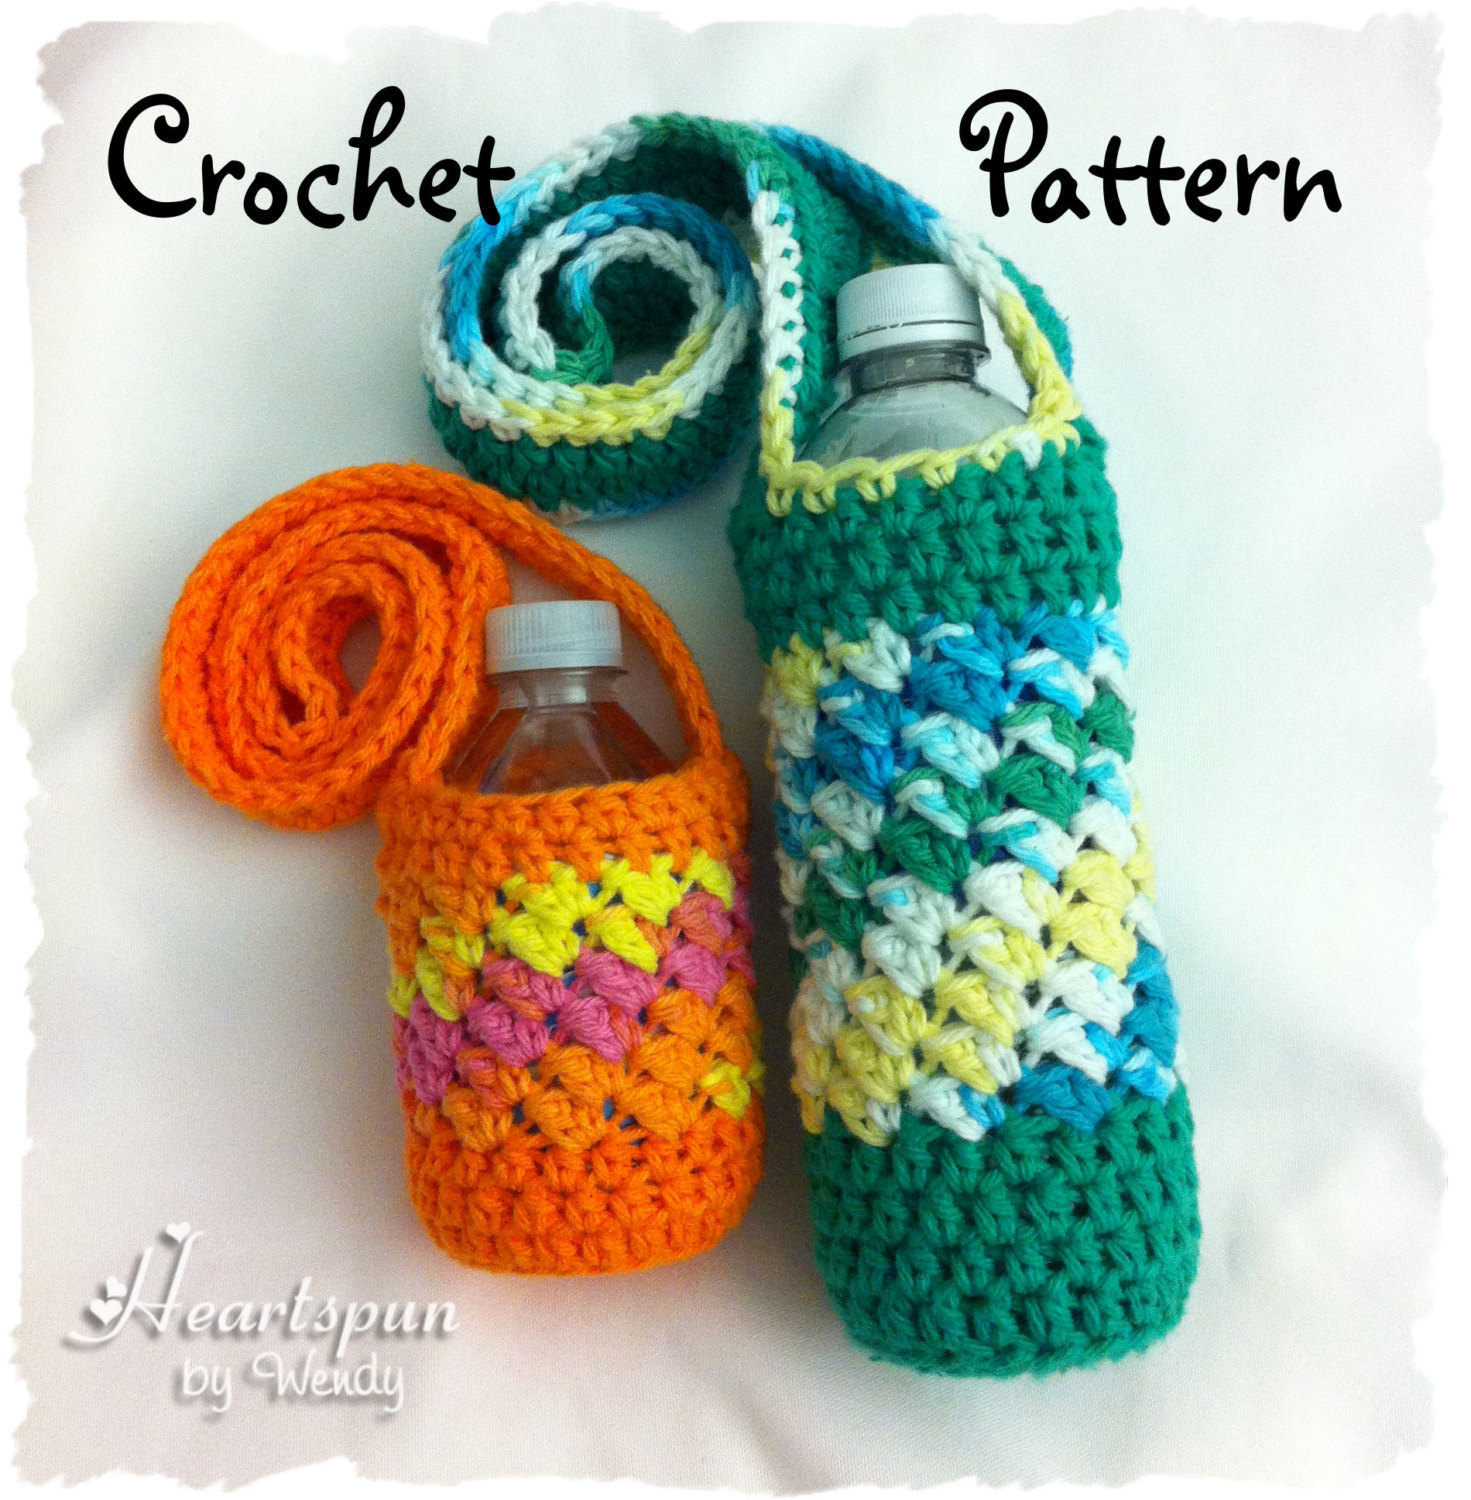 Crochet Bottle Holder Pattern Crochet Pattern To Make A Sideways Shell Water Bottle Holder Etsy